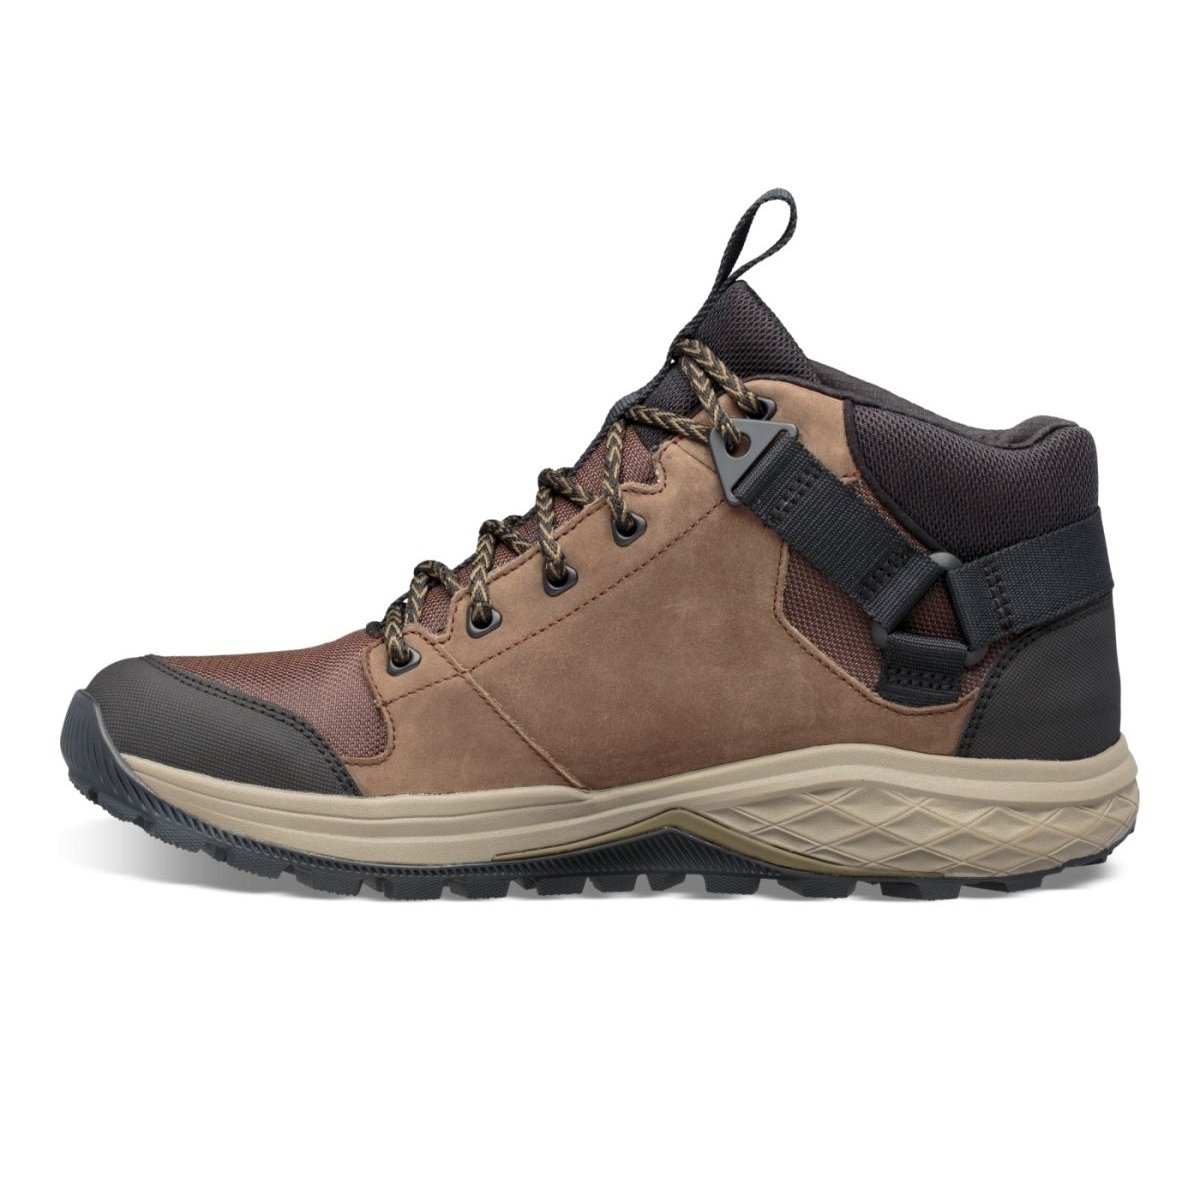 Teva Men's Grandview Mid Gore-Tex Hiking Shoe Chocolate Chip - 1106804-CCHP CHOCOLATE CHIP - CHOCOLATE CHIP, 10